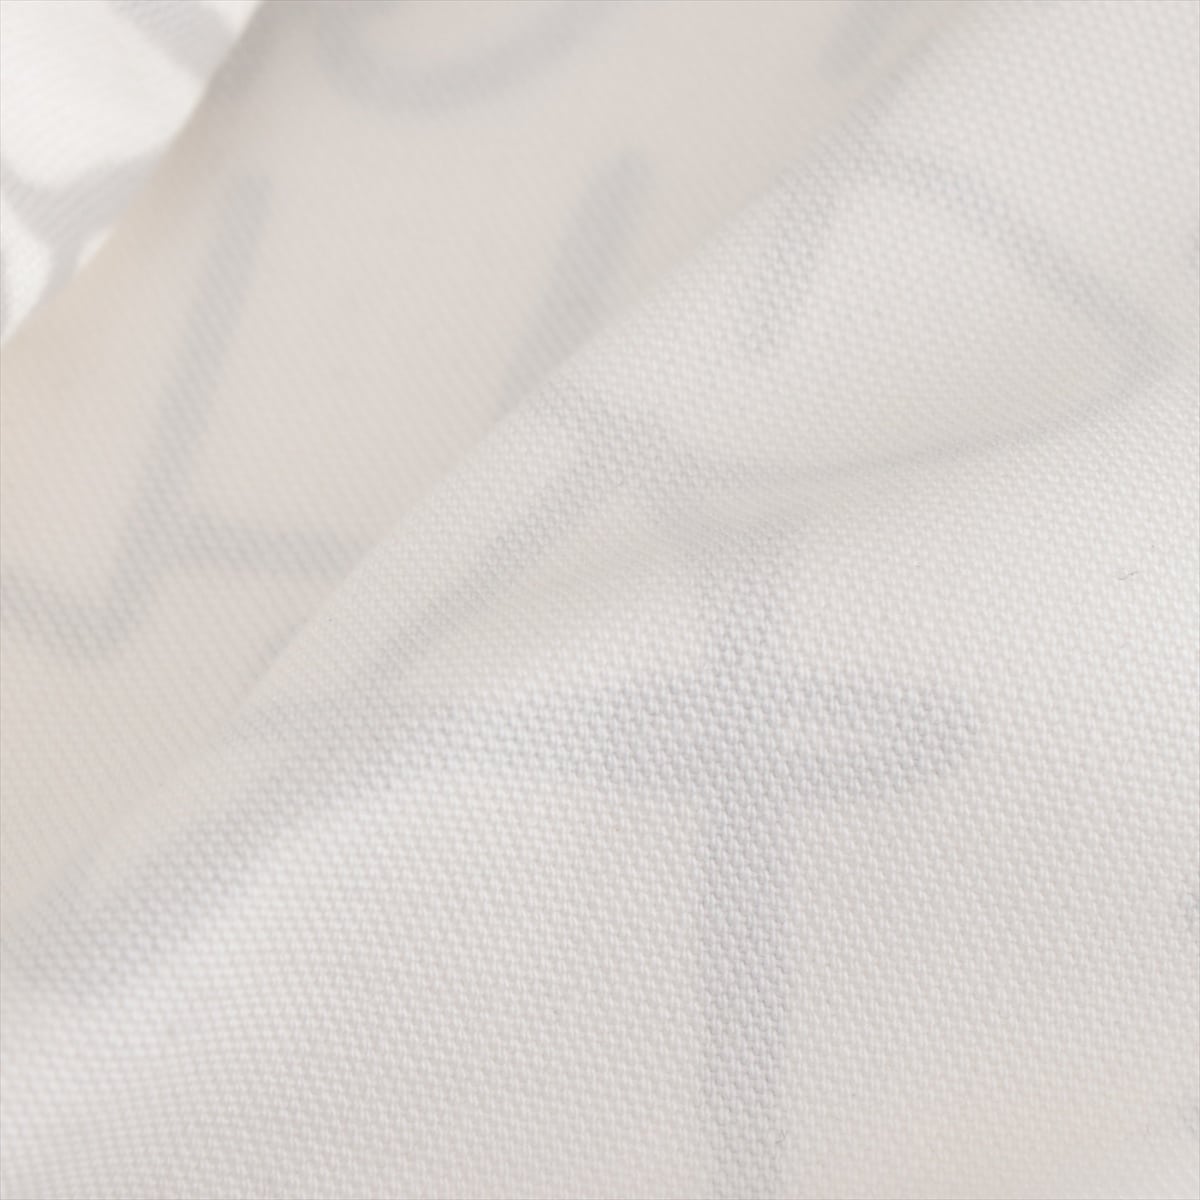 シュプリーム×コムデギャルソン コットン カバーオール M メンズ ホワイト 18AW Painted Canvas Chore Coat